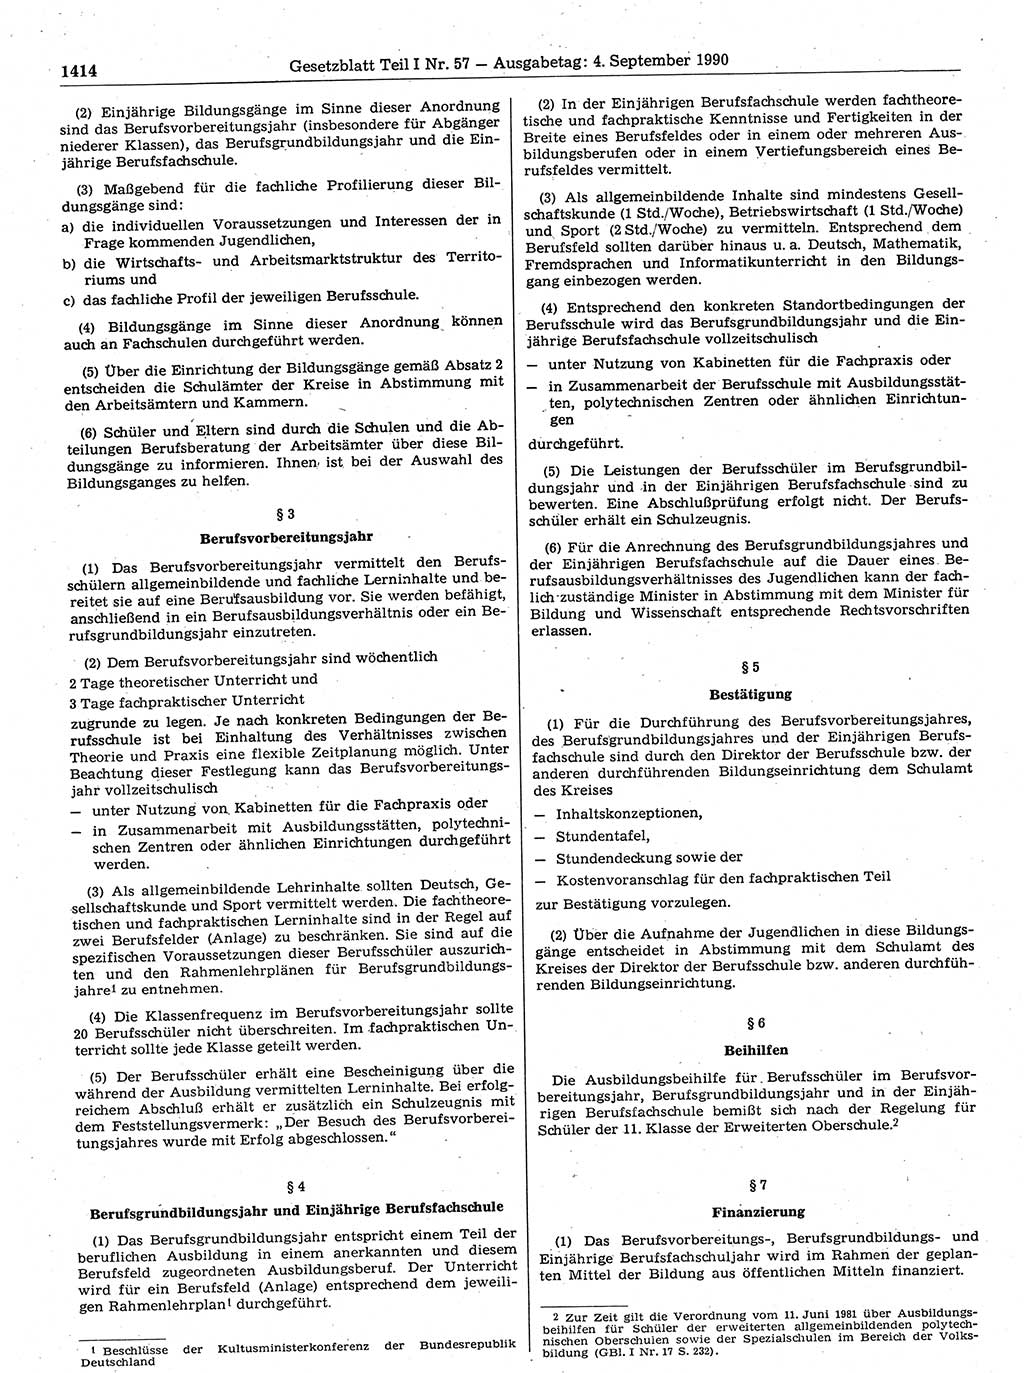 Gesetzblatt (GBl.) der Deutschen Demokratischen Republik (DDR) Teil Ⅰ 1990, Seite 1414 (GBl. DDR Ⅰ 1990, S. 1414)